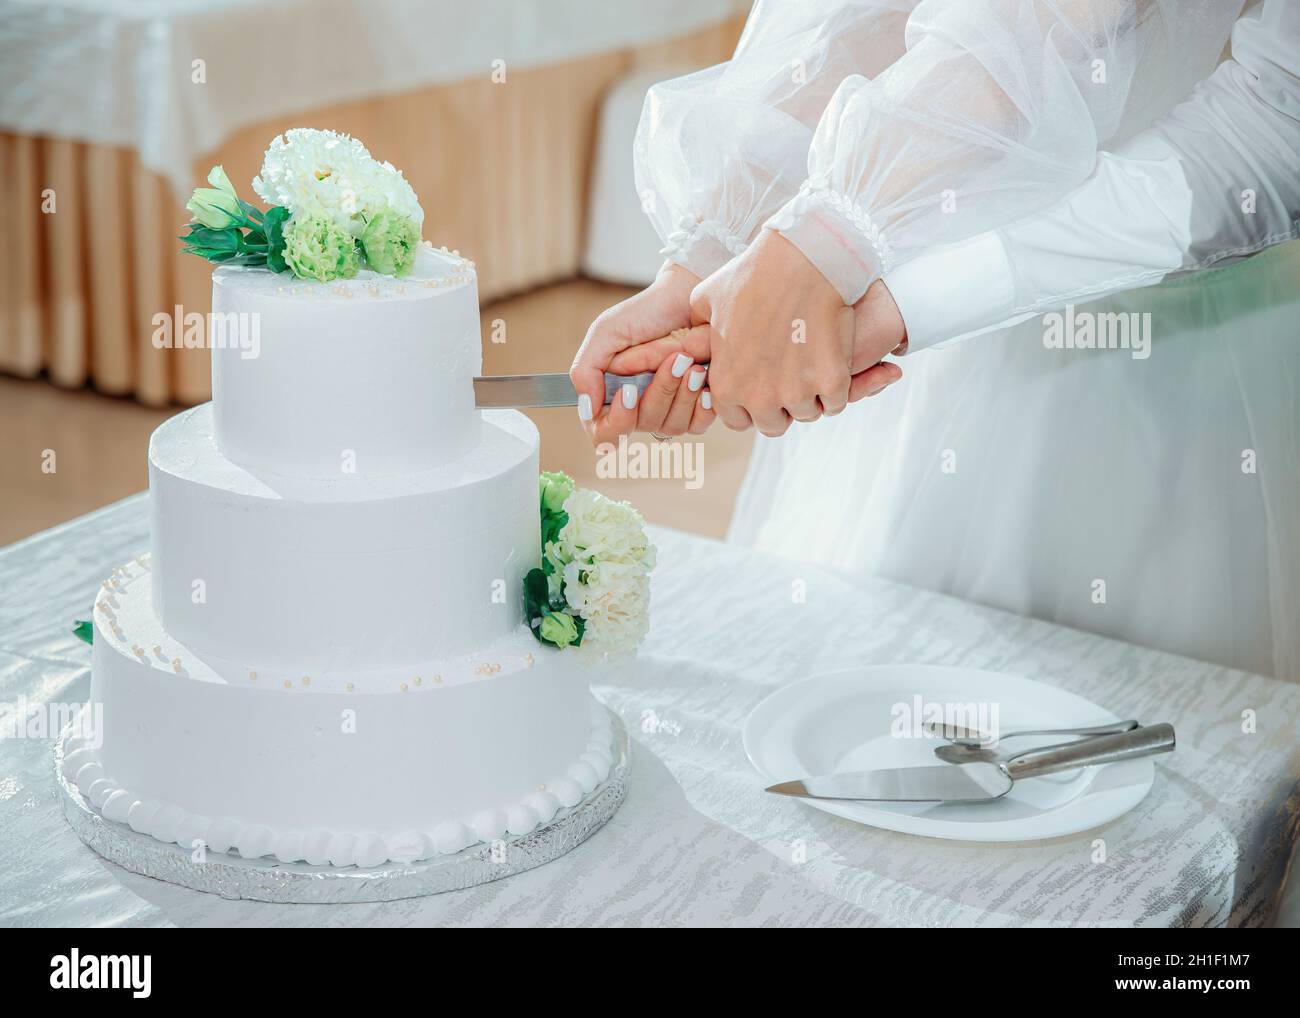 Les jeunes mariés coupent le gâteau de mariage.Une mariée et un marié mains tiennent un couteau, gros plan.Magnifique gâteau blanc à trois niveaux décoré de fleurs Banque D'Images